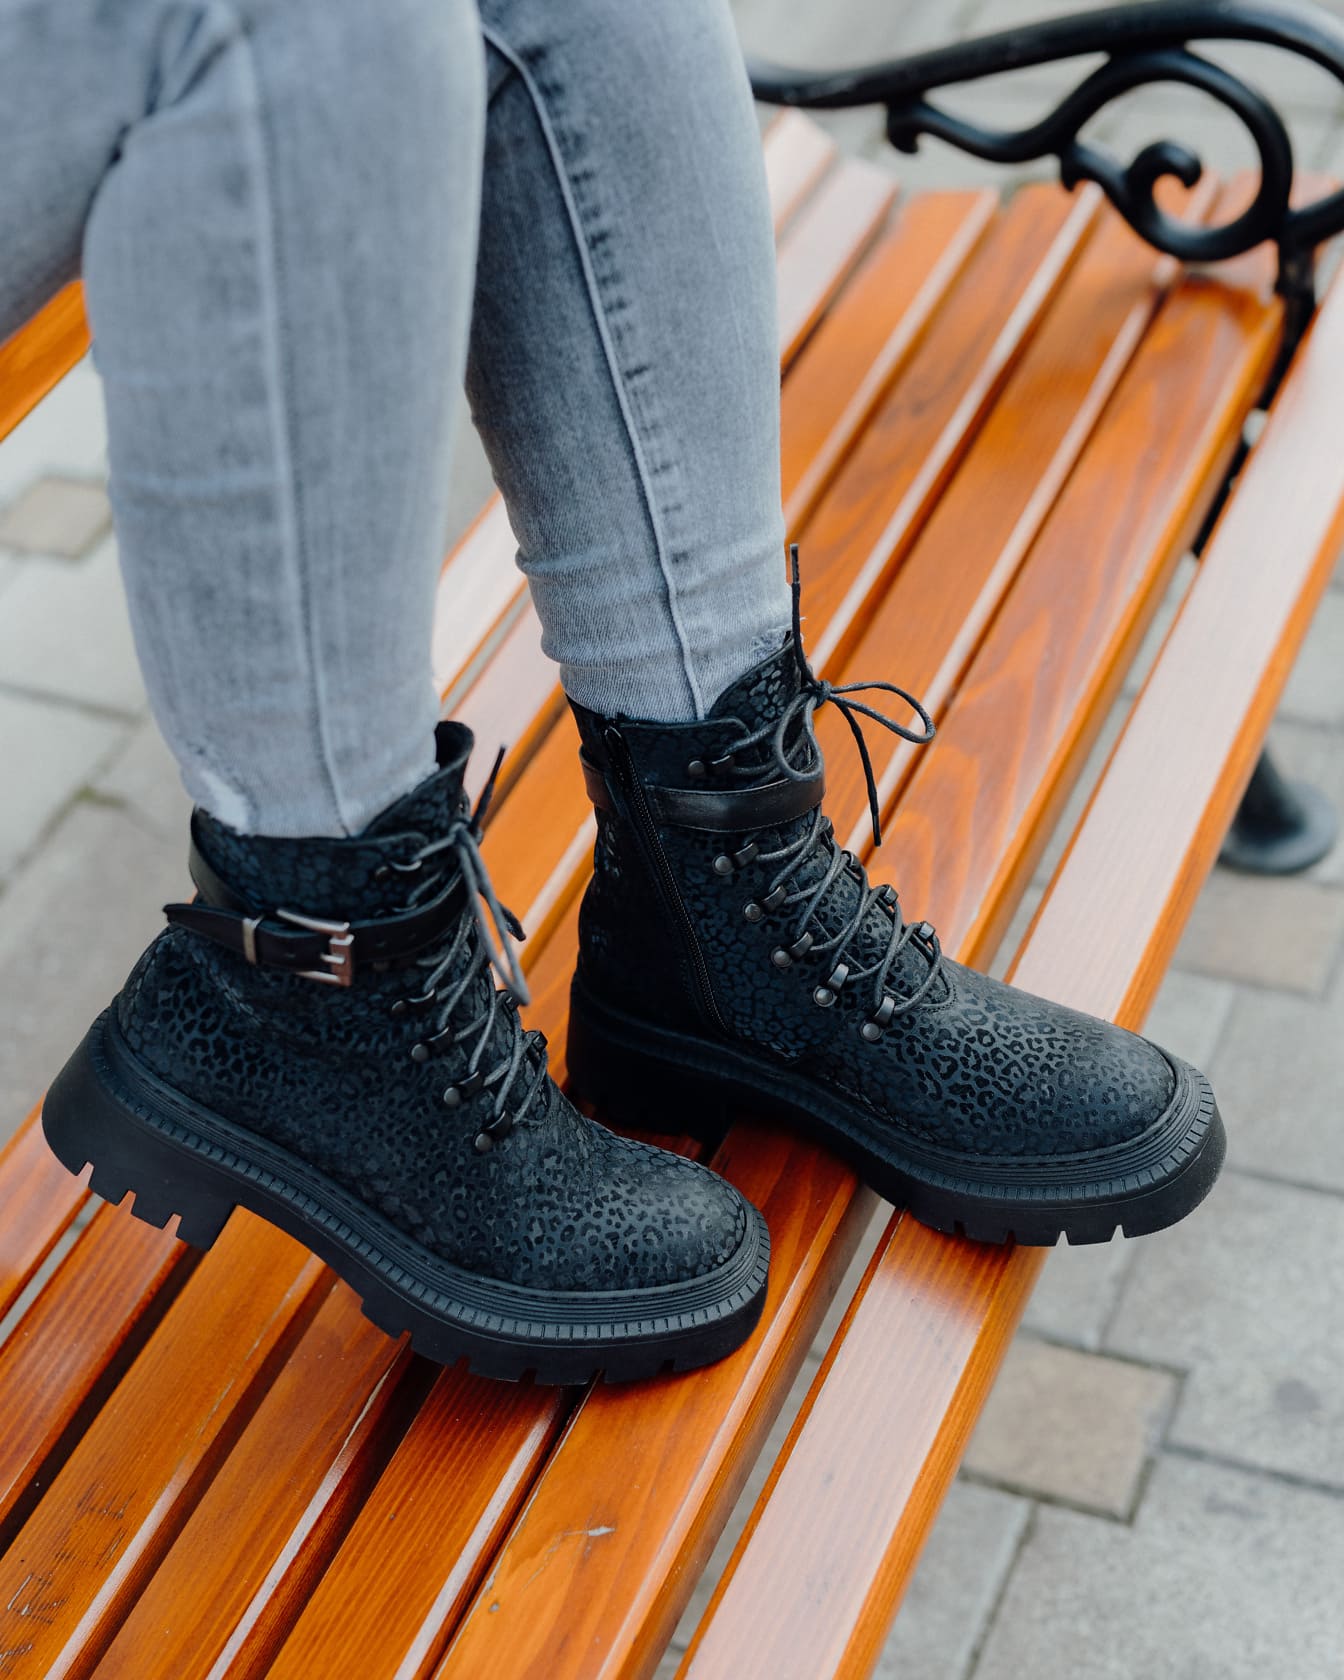 Beine in Jeanshosen und schwarzen modernen Stiefeln auf einer Holzbank